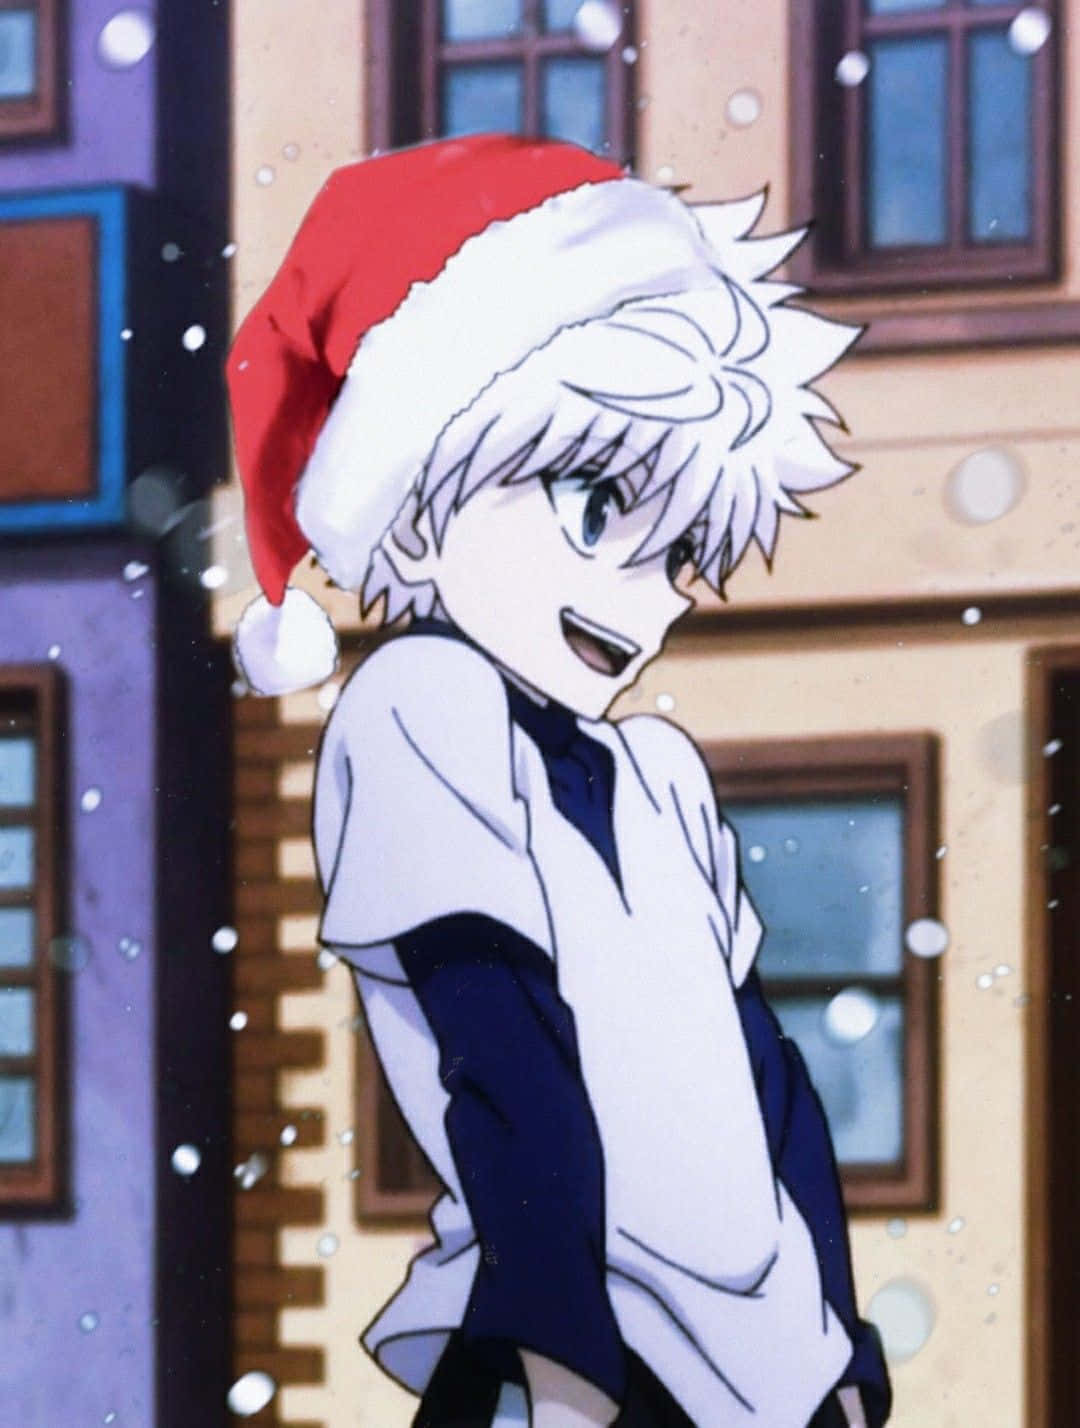 Doismeninos Vestidos Como Papai Noel E Elfos Em Uma Cena Aconchegante De Anime De Natal. Papel de Parede